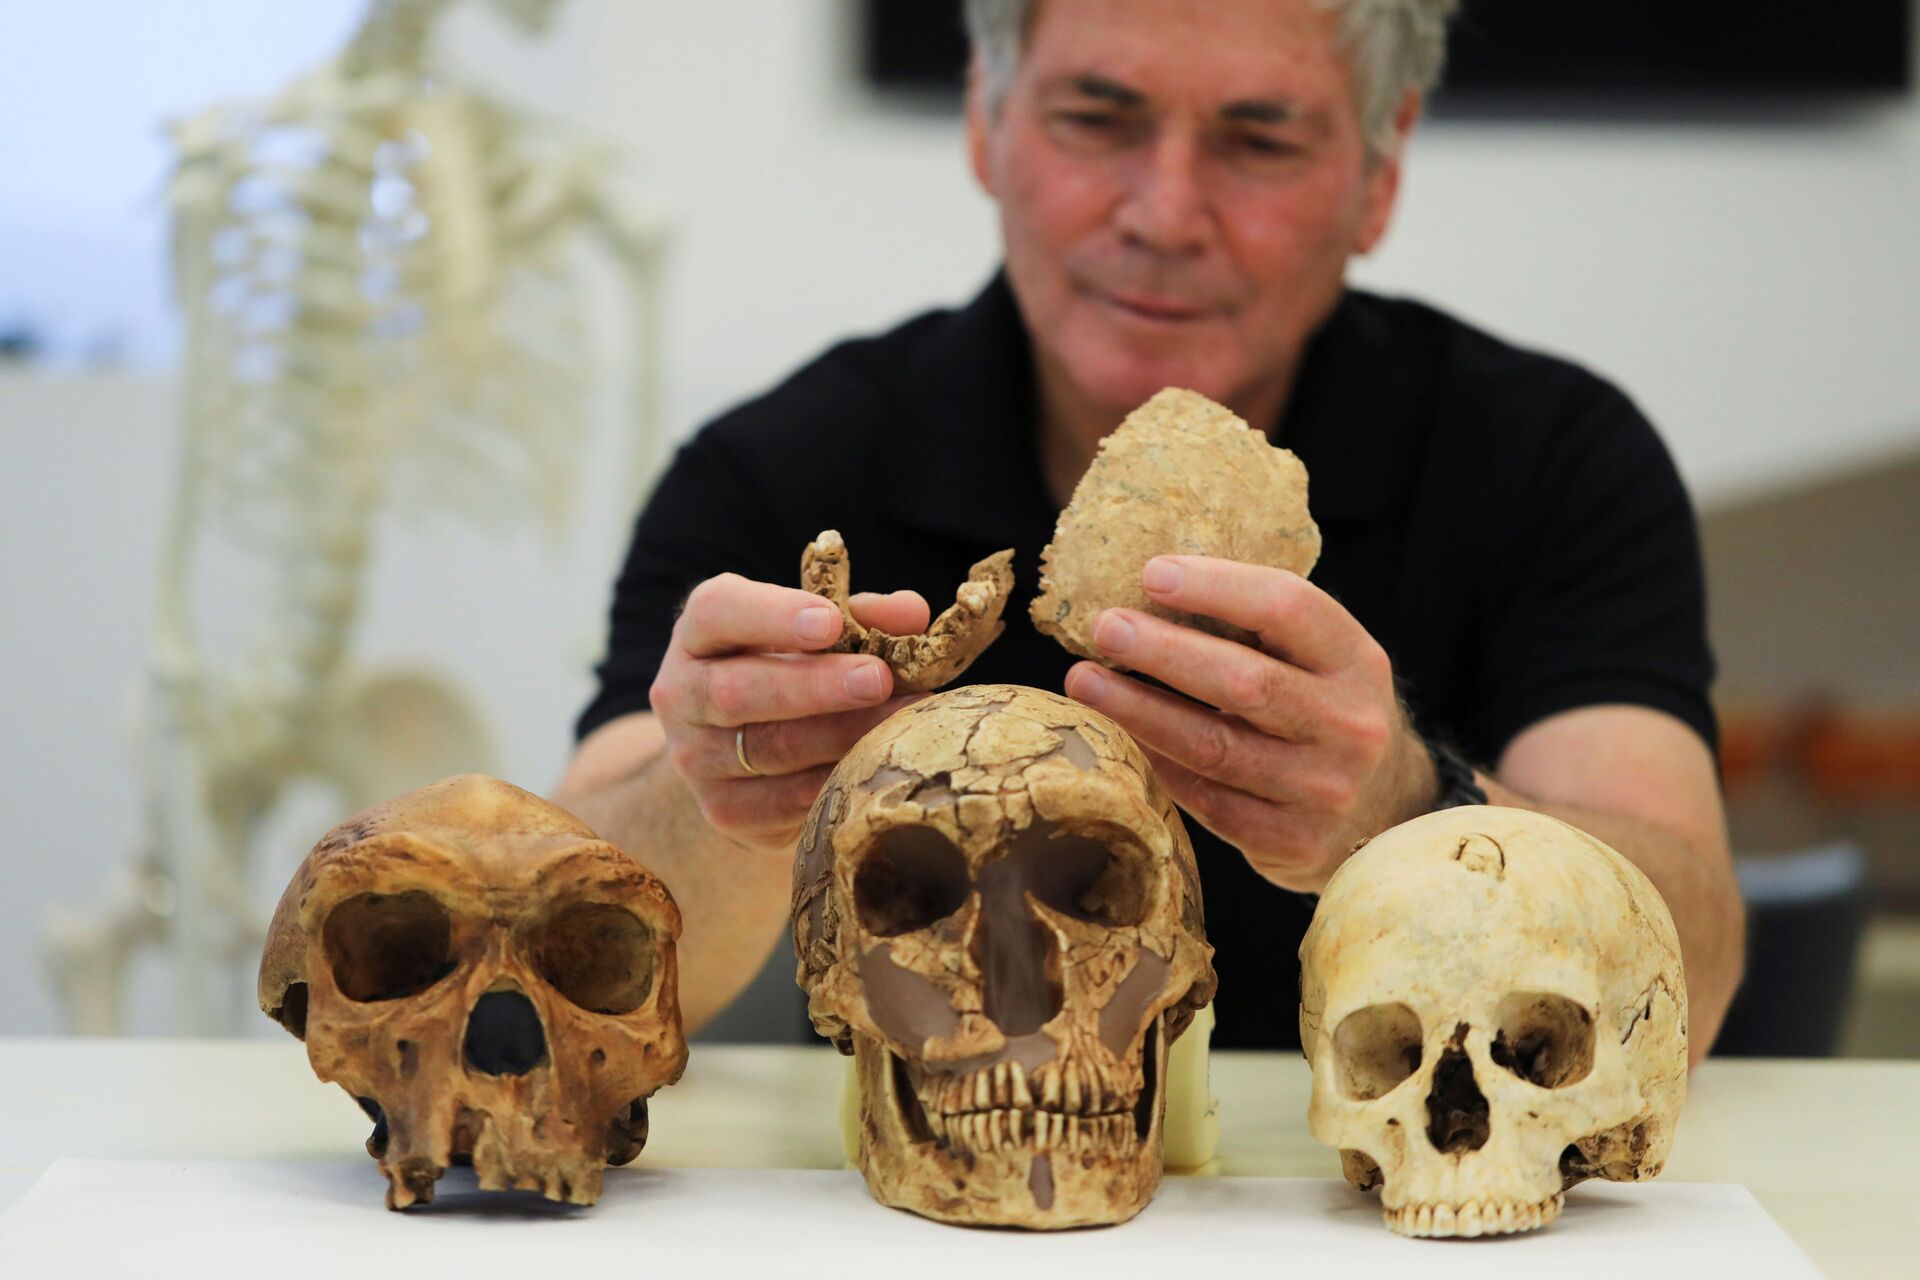 Restos mortais de 140 mil anos revelam 'nova espécie humana' em Israel (FOTOS, VÍDEO) - Sputnik Brasil, 1920, 25.06.2021